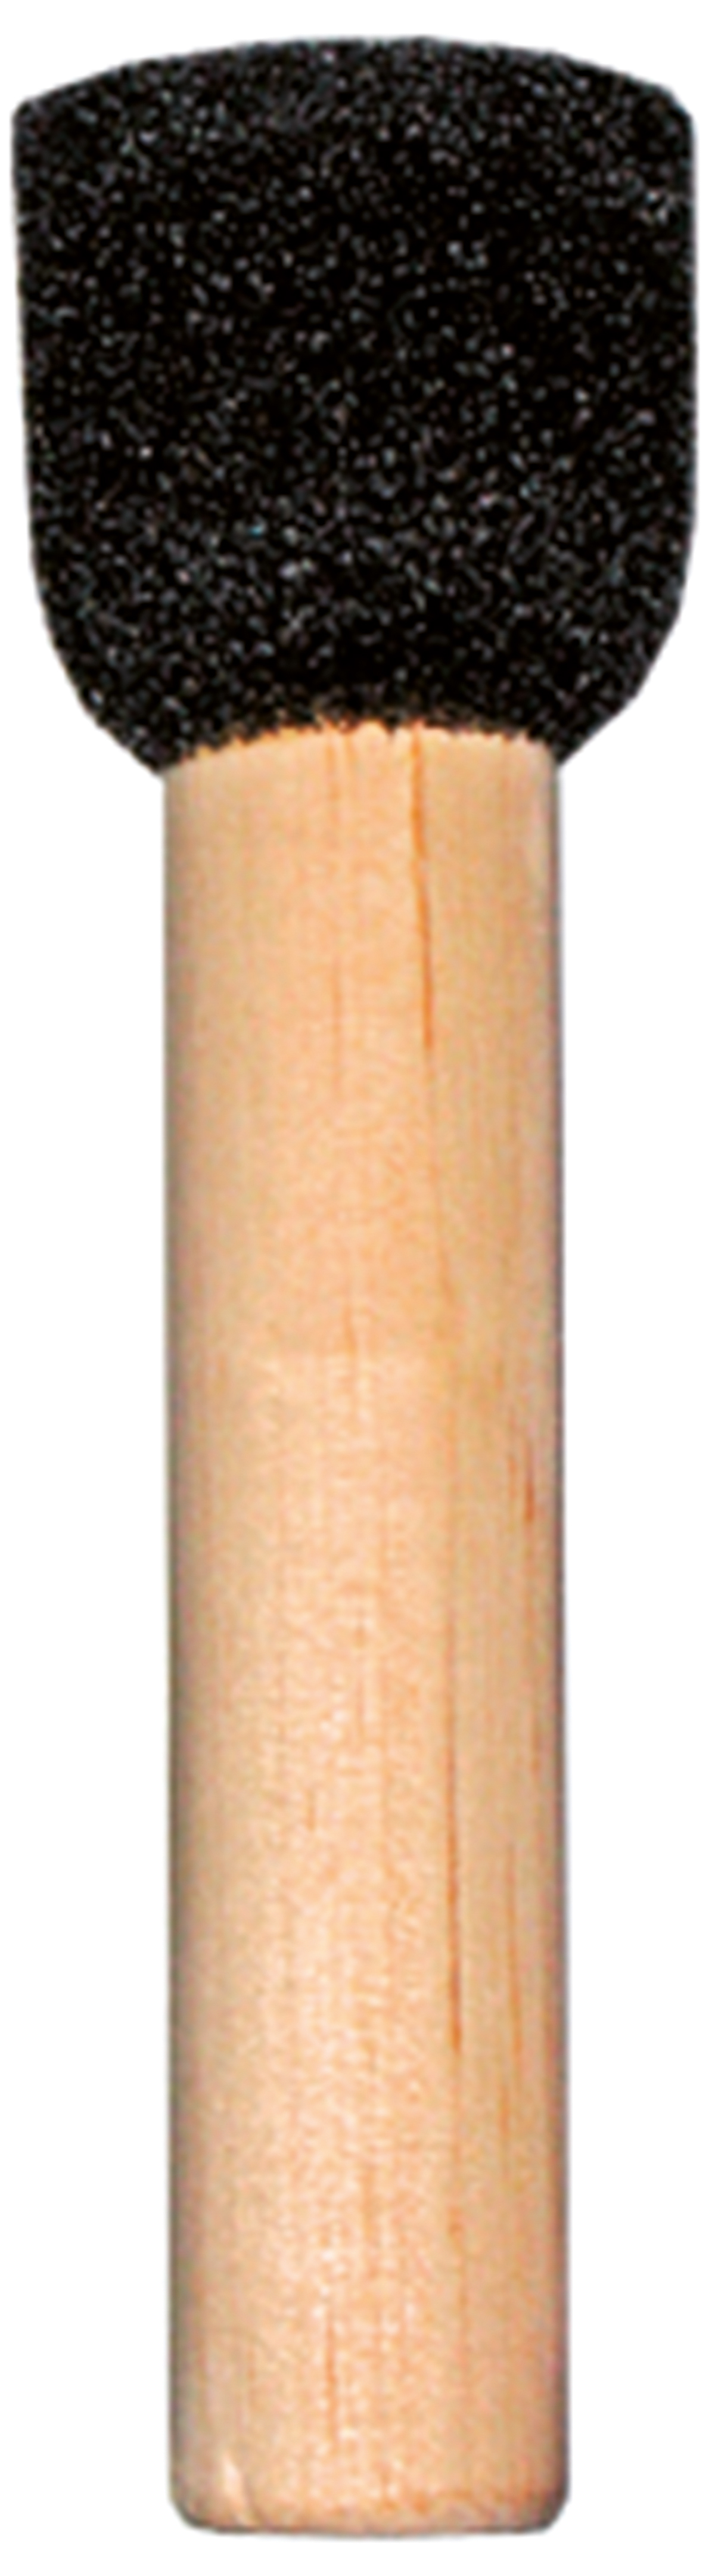 Runder Schwammpinsel ca. 28mm Ø